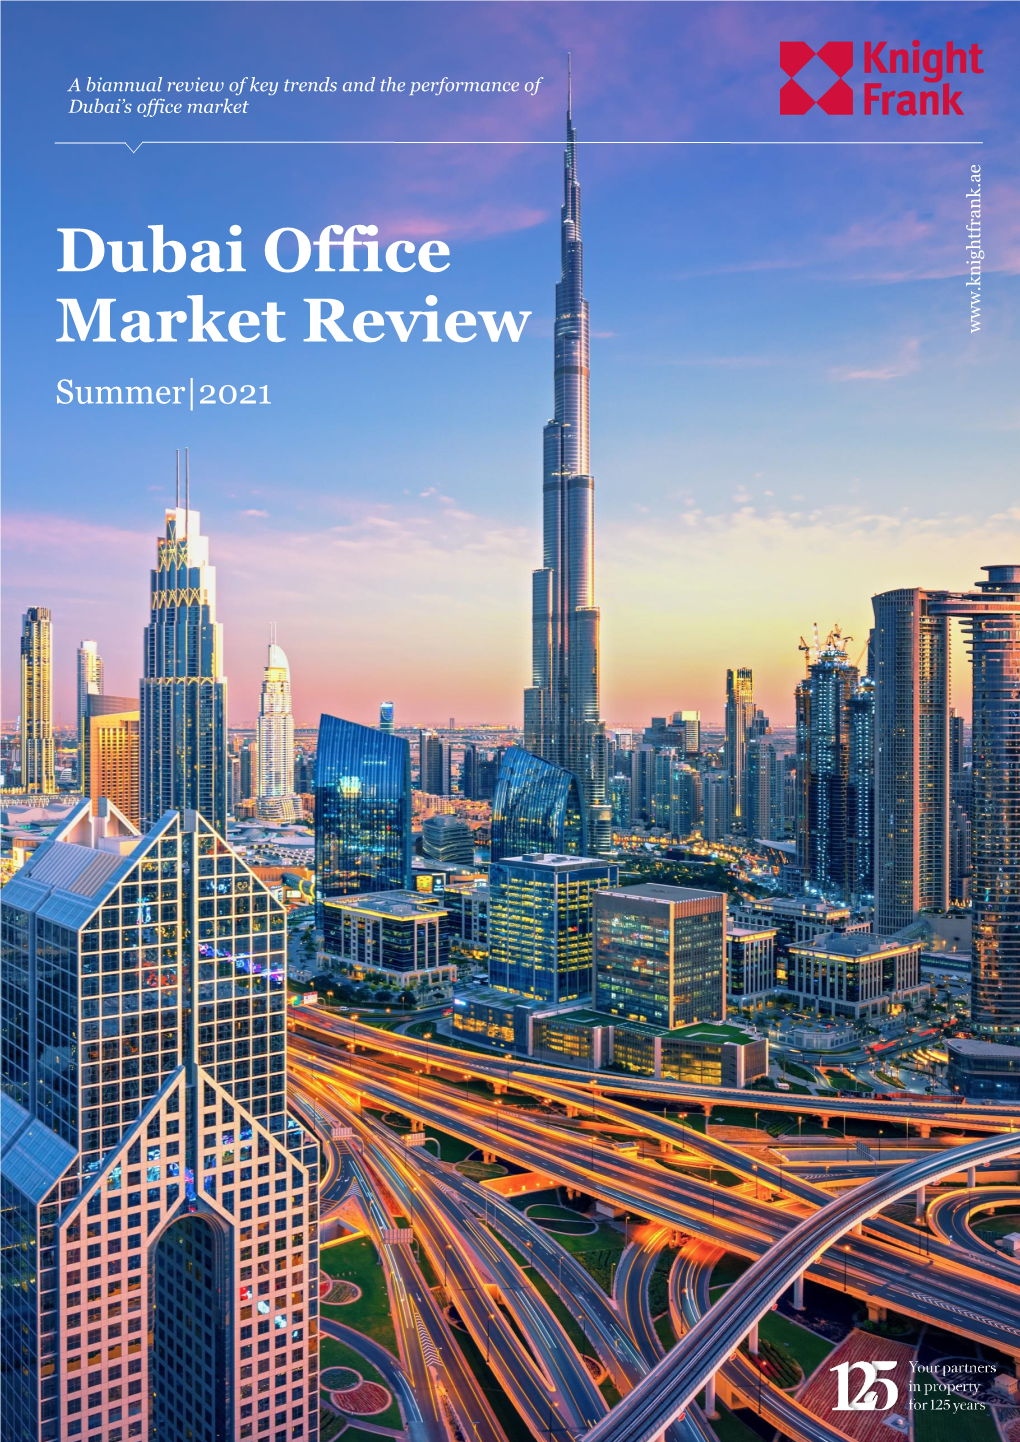 Dubai Office Market Review